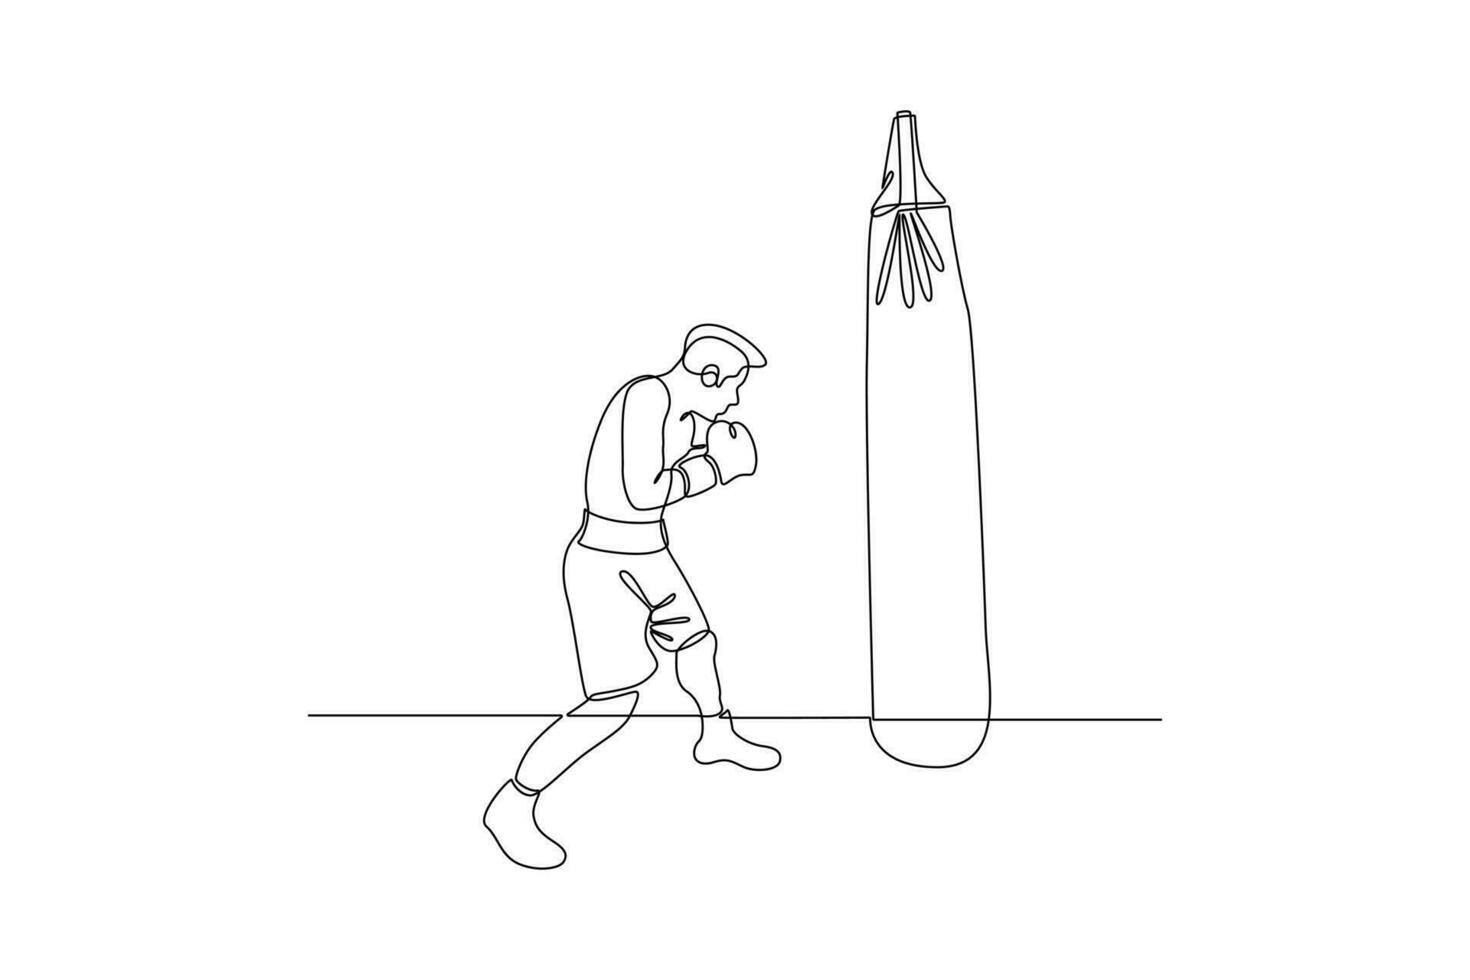 continuo uno linea disegno pugili, muai tailandese combattenti. boxe, gli sport, allenarsi concetto. scarabocchio vettore illustrazione.